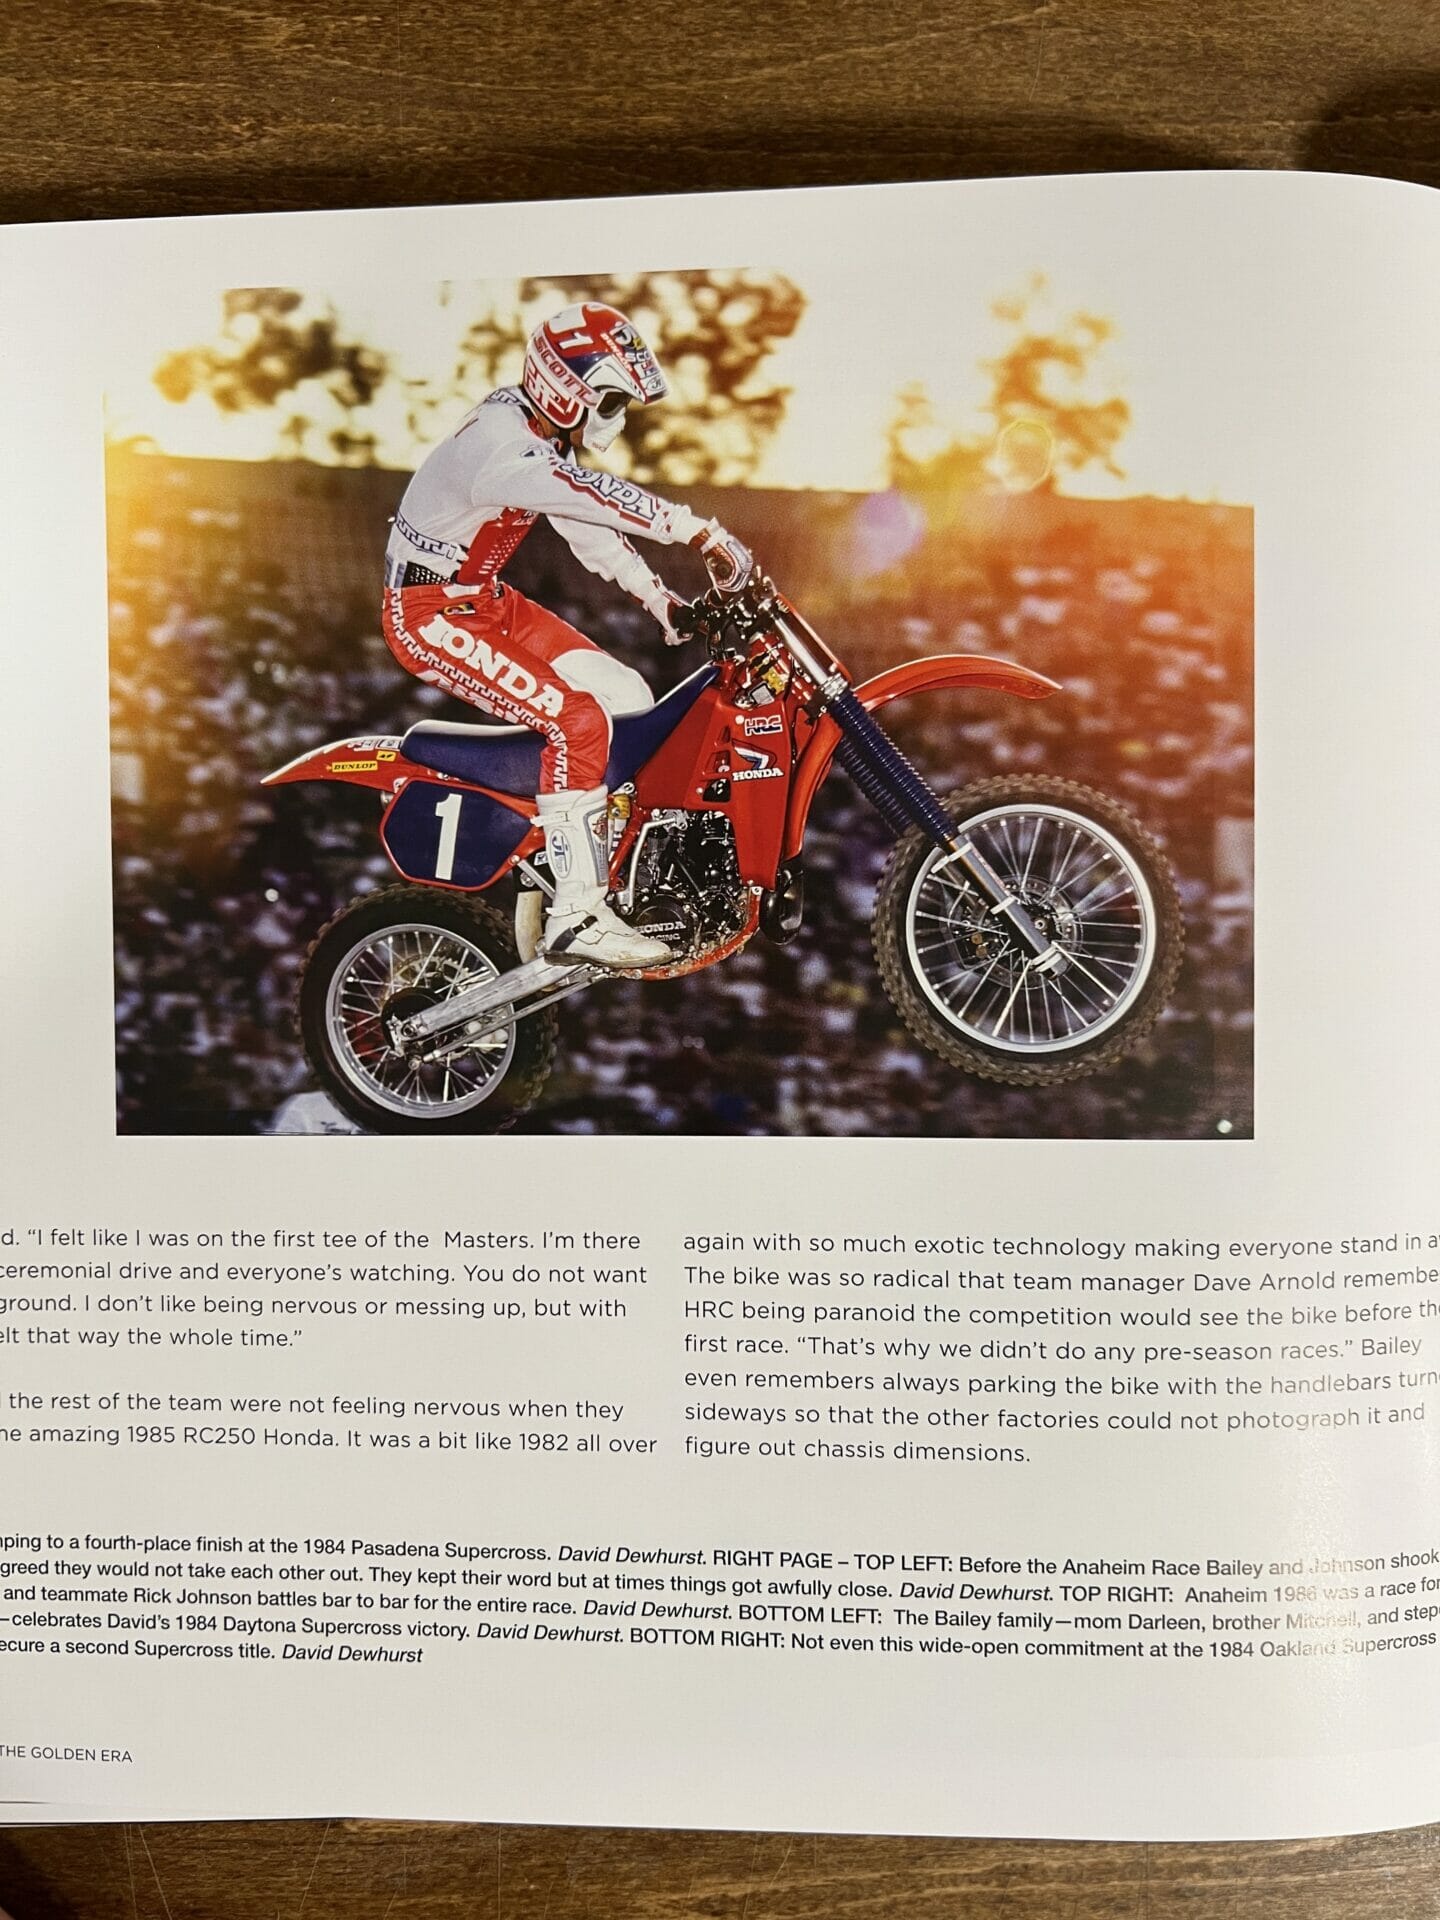 The Golden Era of Motocross, David Bailey